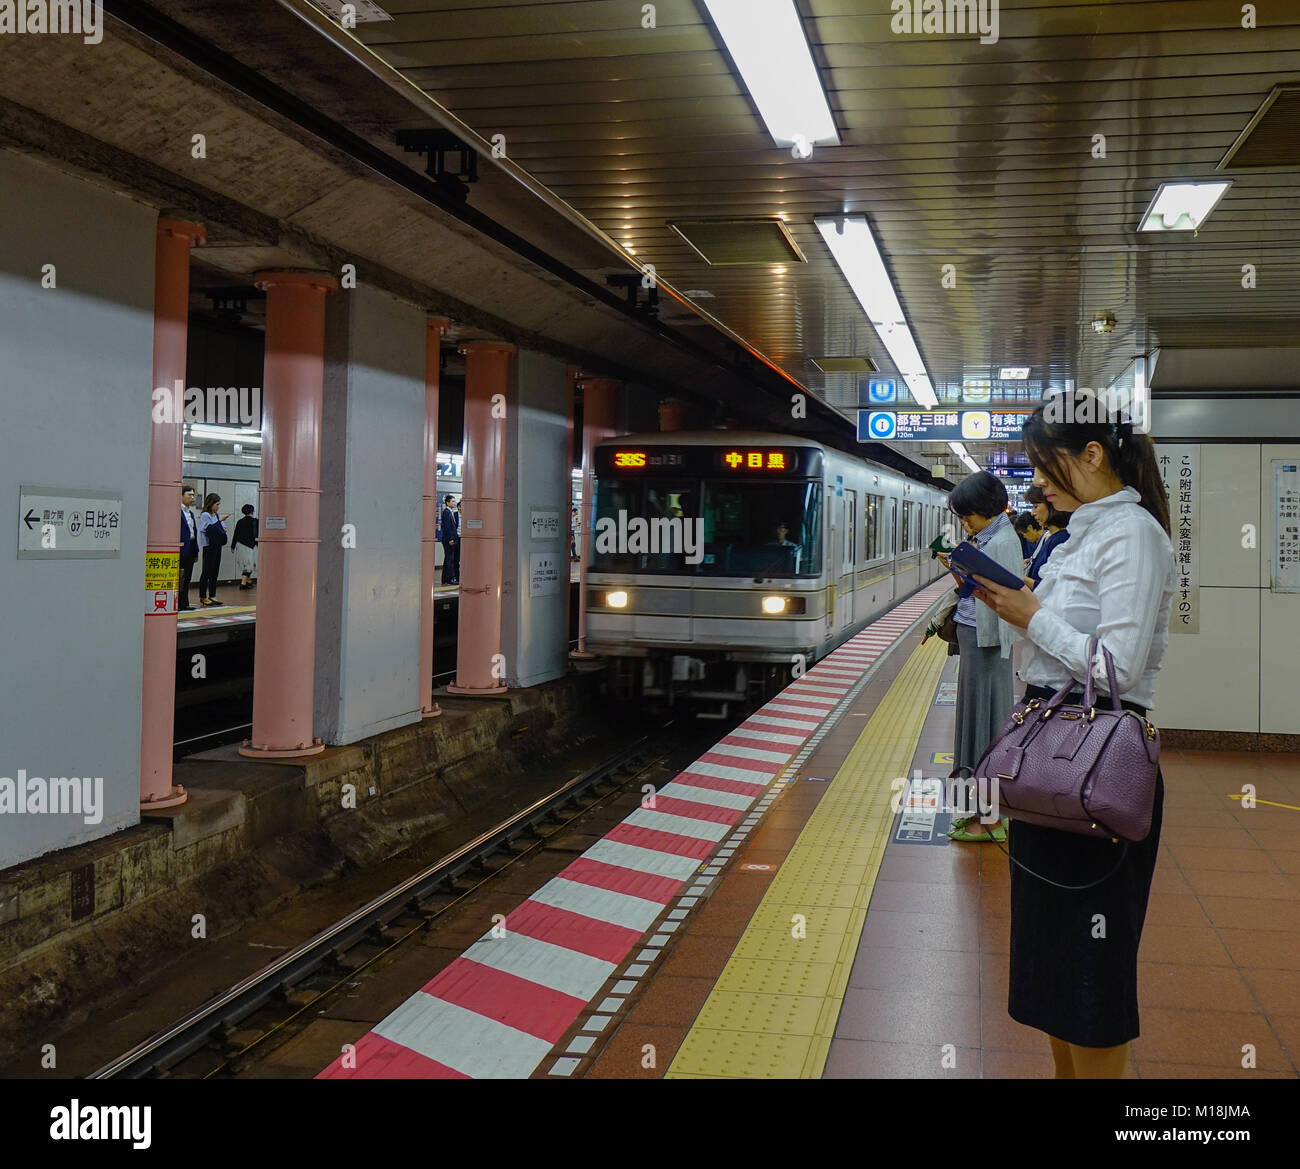 Tokyo, Giappone - 29 set 2017. La gente in attesa del treno alla stazione della metropolitana di Tokyo, Giappone. Il trasporto ferroviario in Giappone è uno dei principali mezzi per il trasporto di passeggeri tran Foto Stock